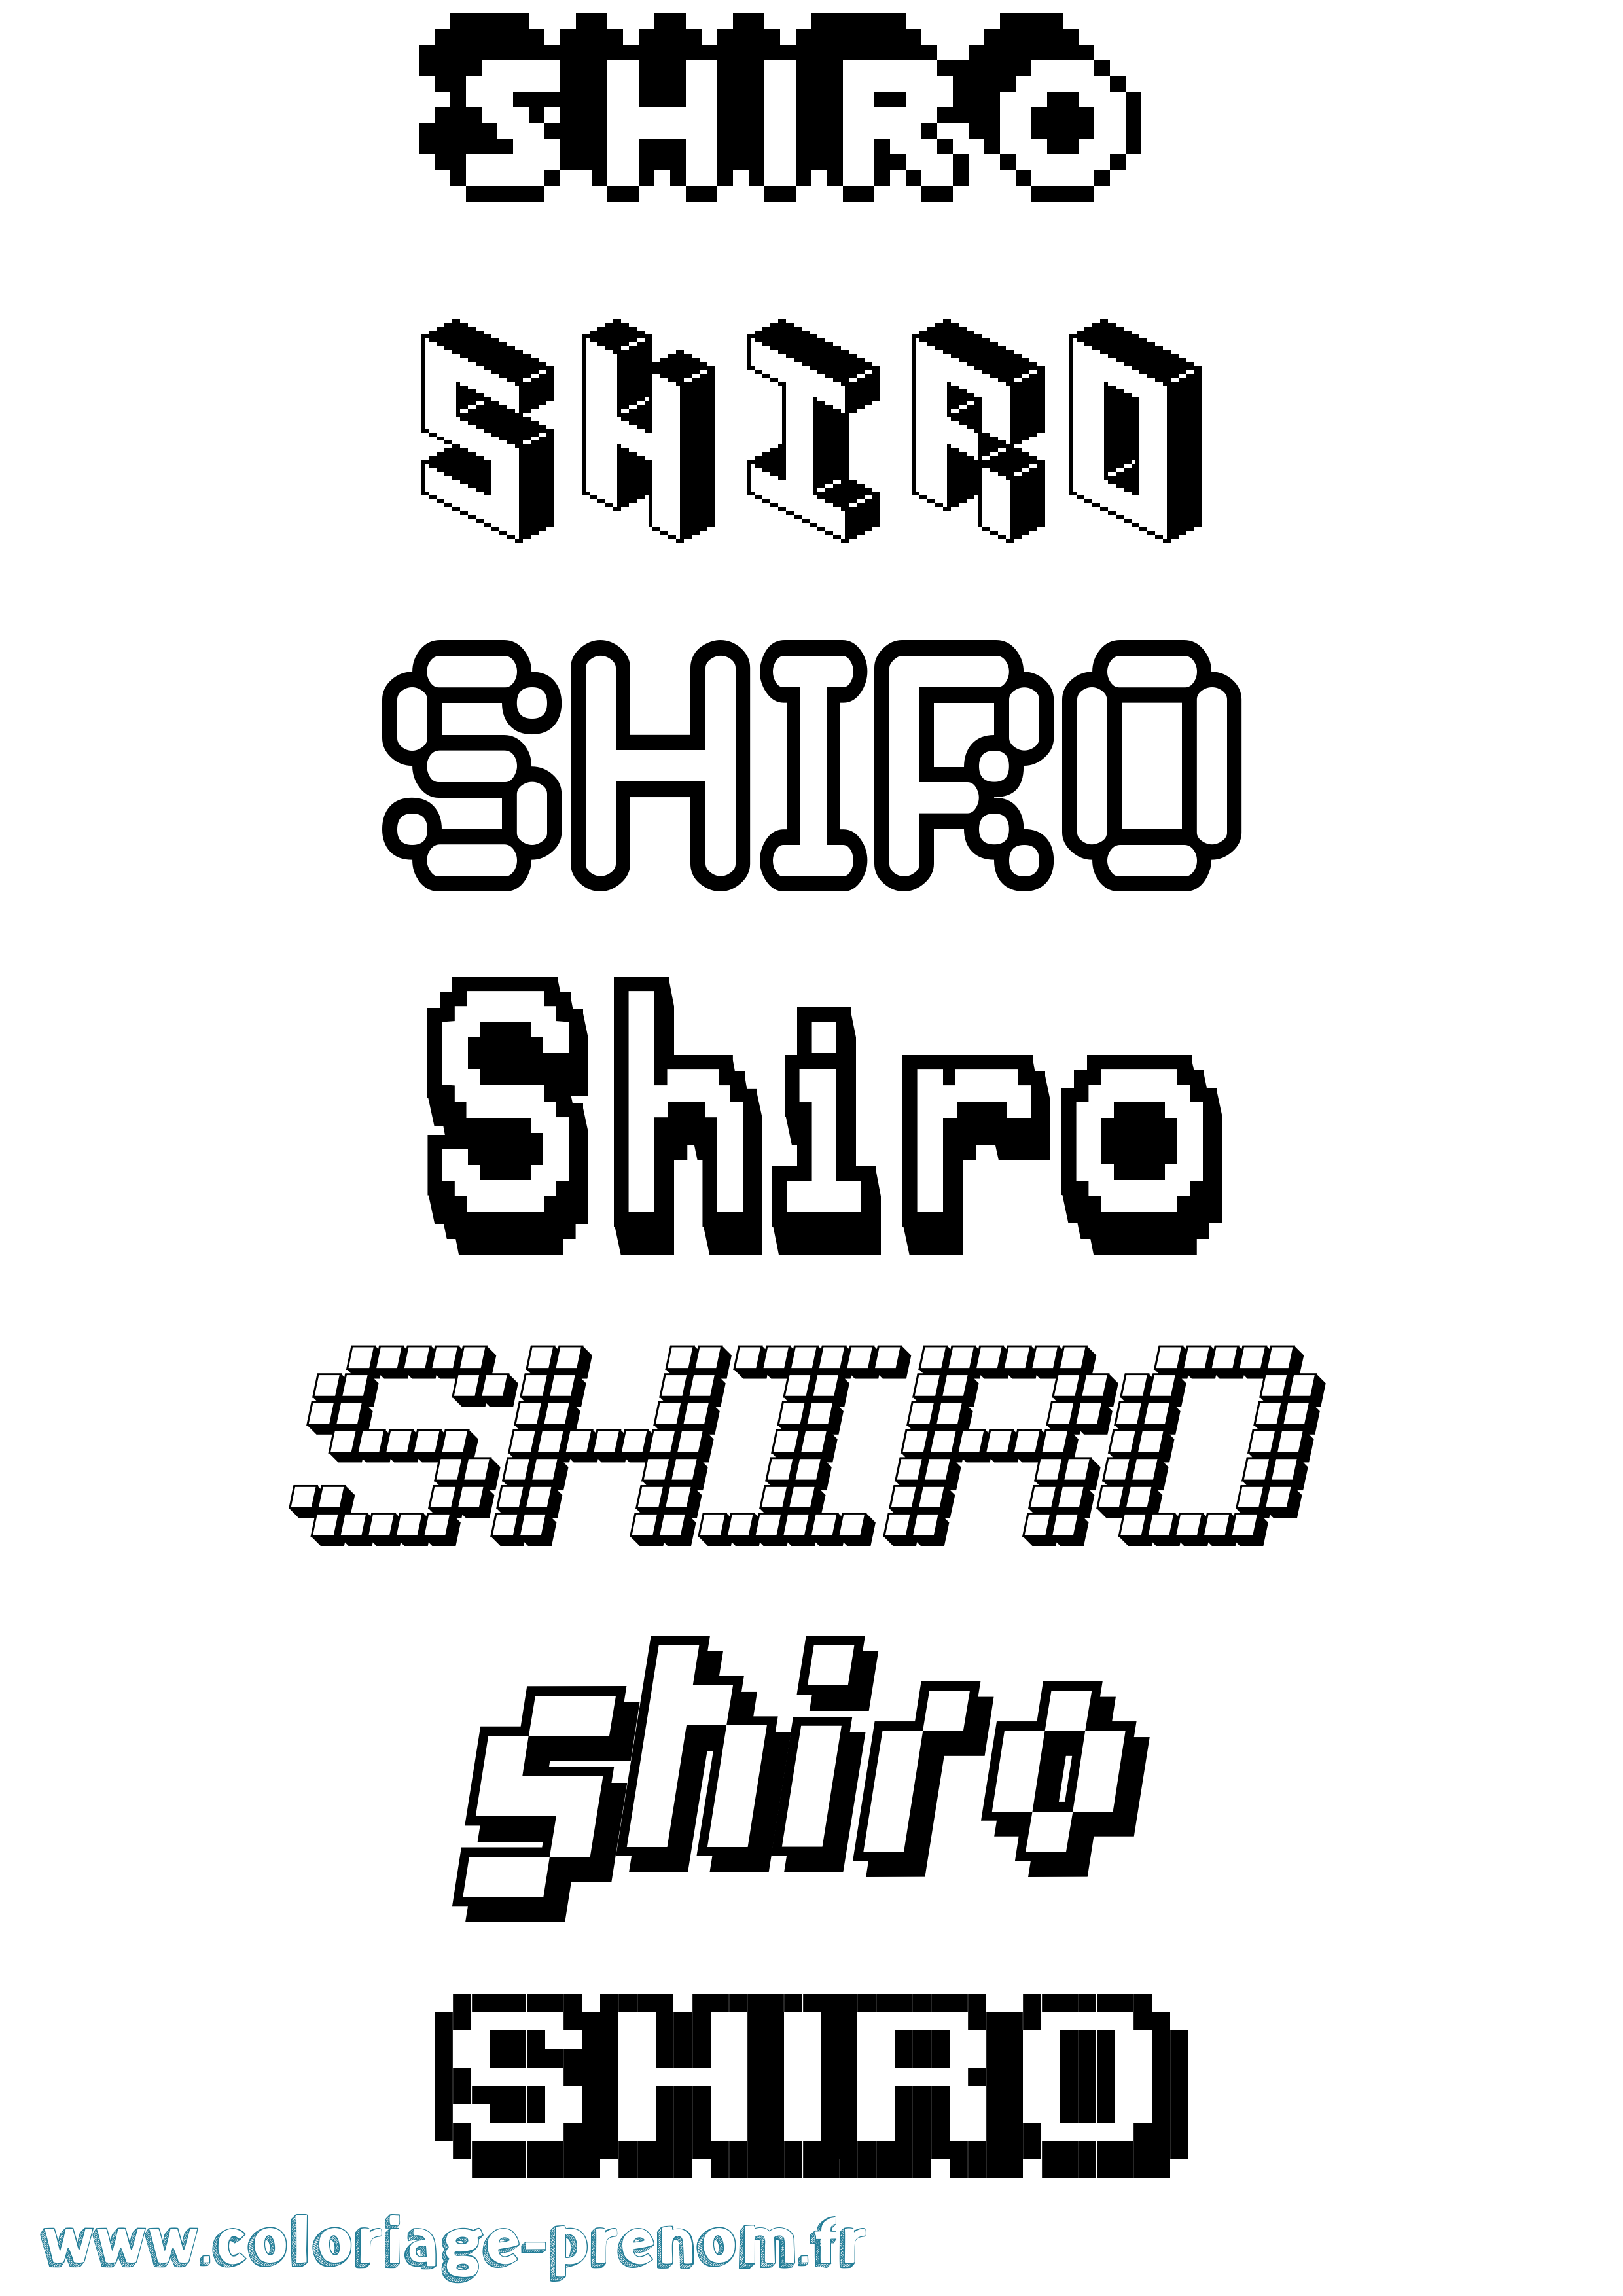 Coloriage prénom Shiro Pixel